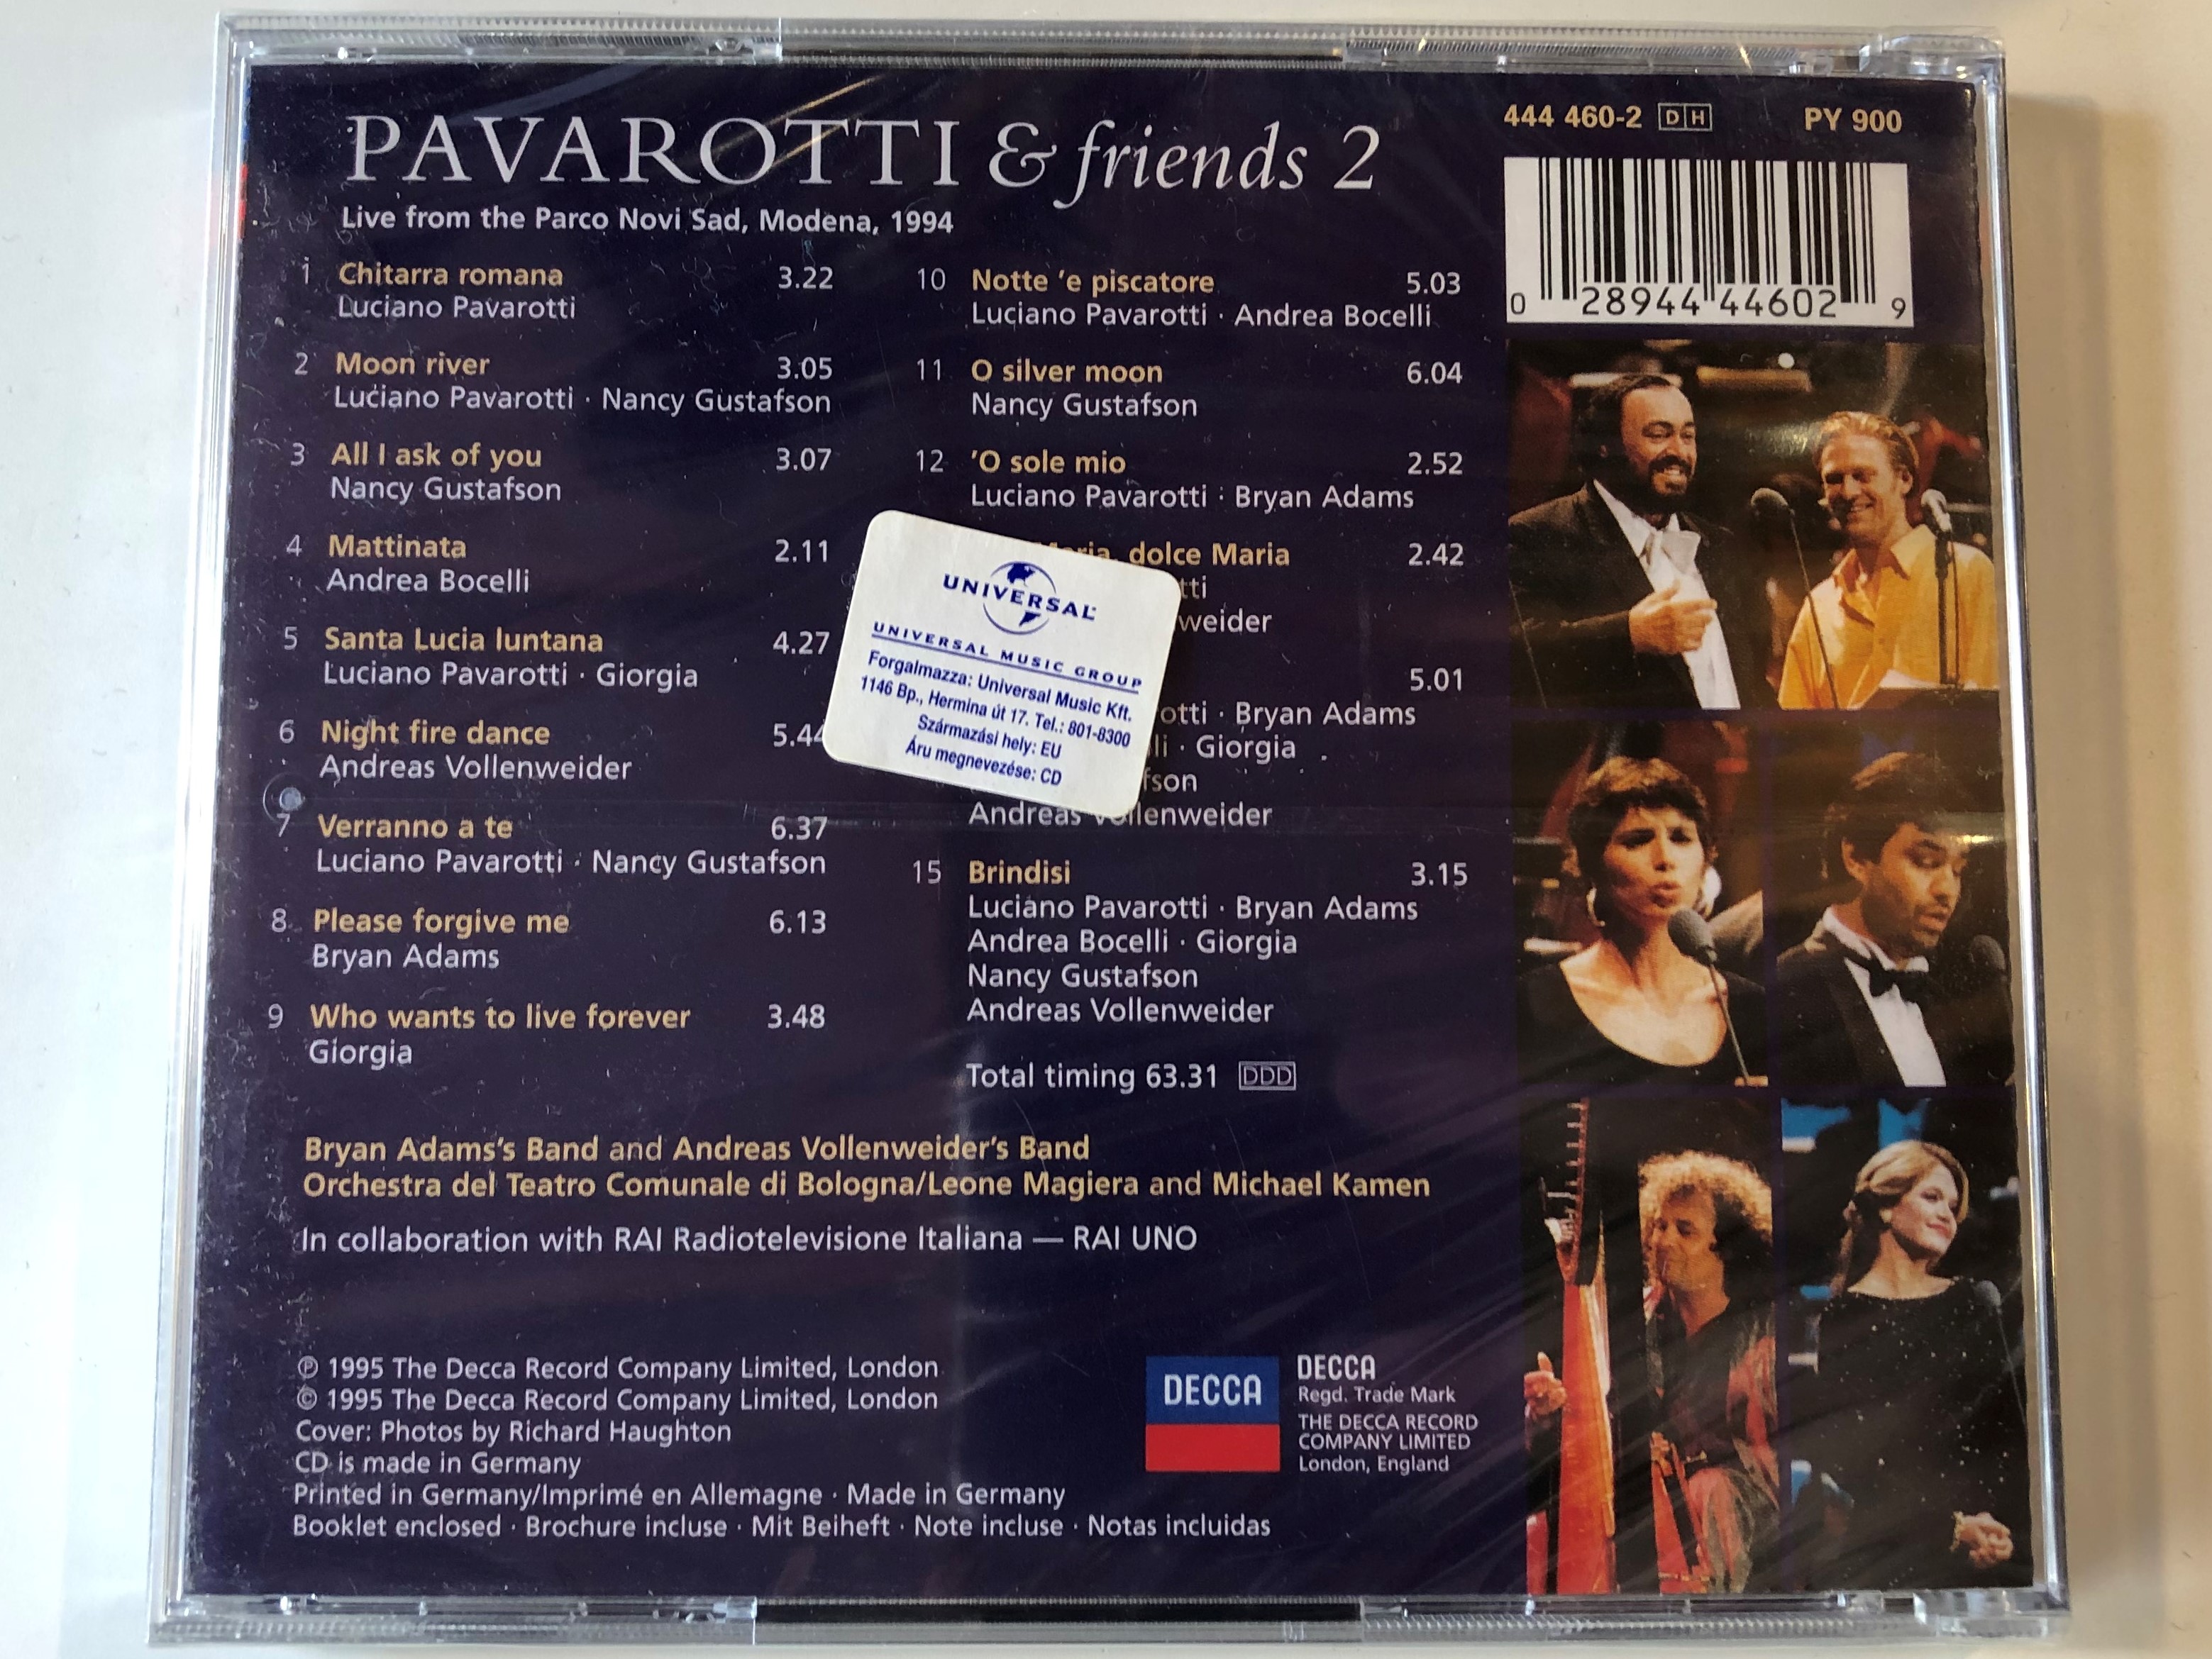 pavarotti-friends-2-bryan-adams-andrea-bocelli-giorgia-nancy-gustafson-andreas-vollenweider-michael-kamen-leone-magiera-decca-audio-cd-1995-444-460-2-2-.jpg